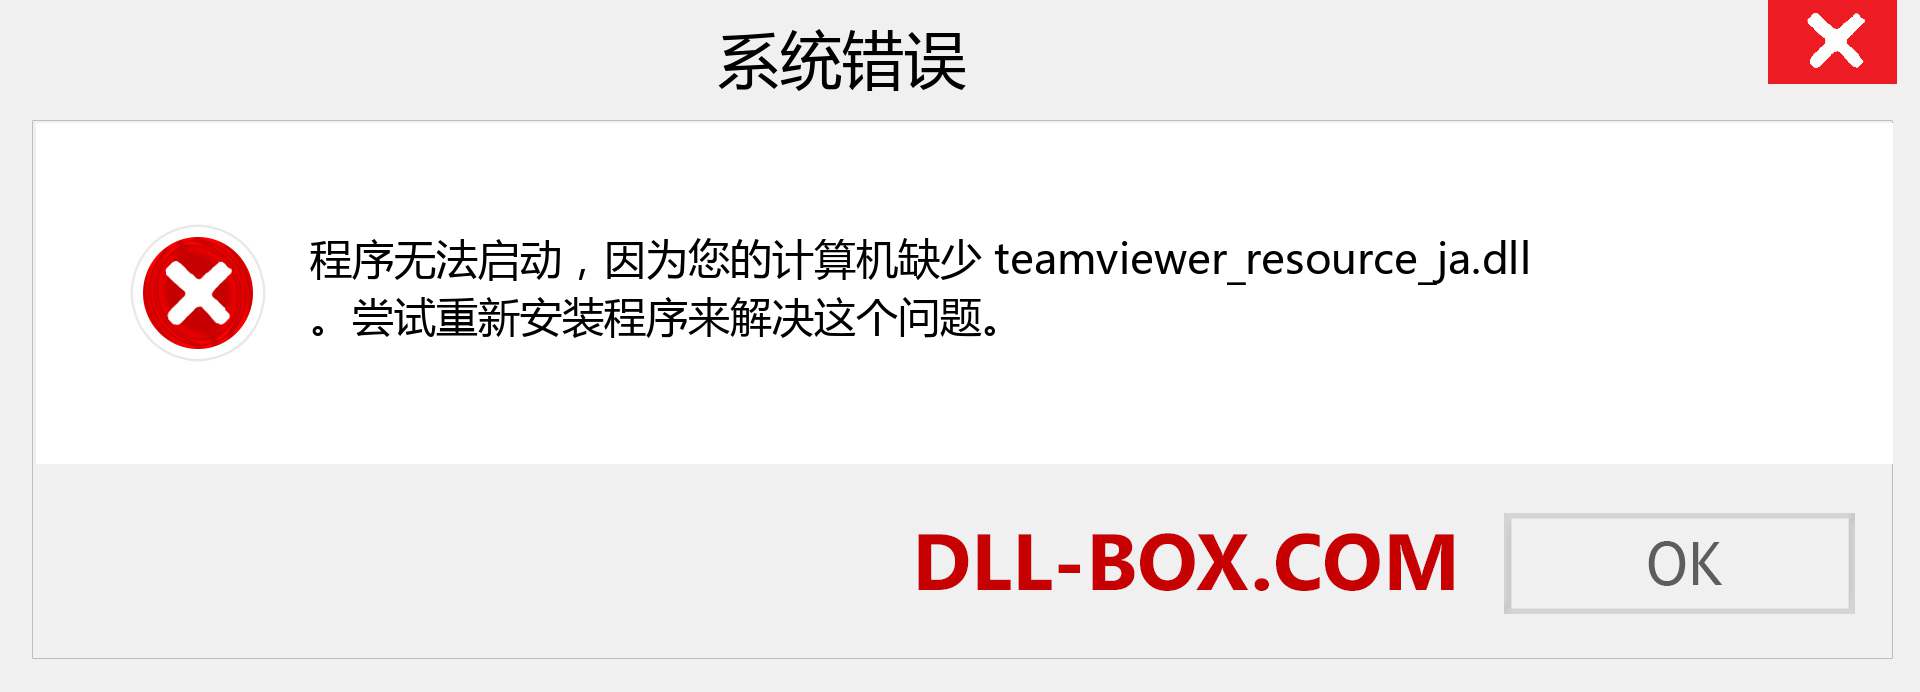 teamviewer_resource_ja.dll 文件丢失？。 适用于 Windows 7、8、10 的下载 - 修复 Windows、照片、图像上的 teamviewer_resource_ja dll 丢失错误